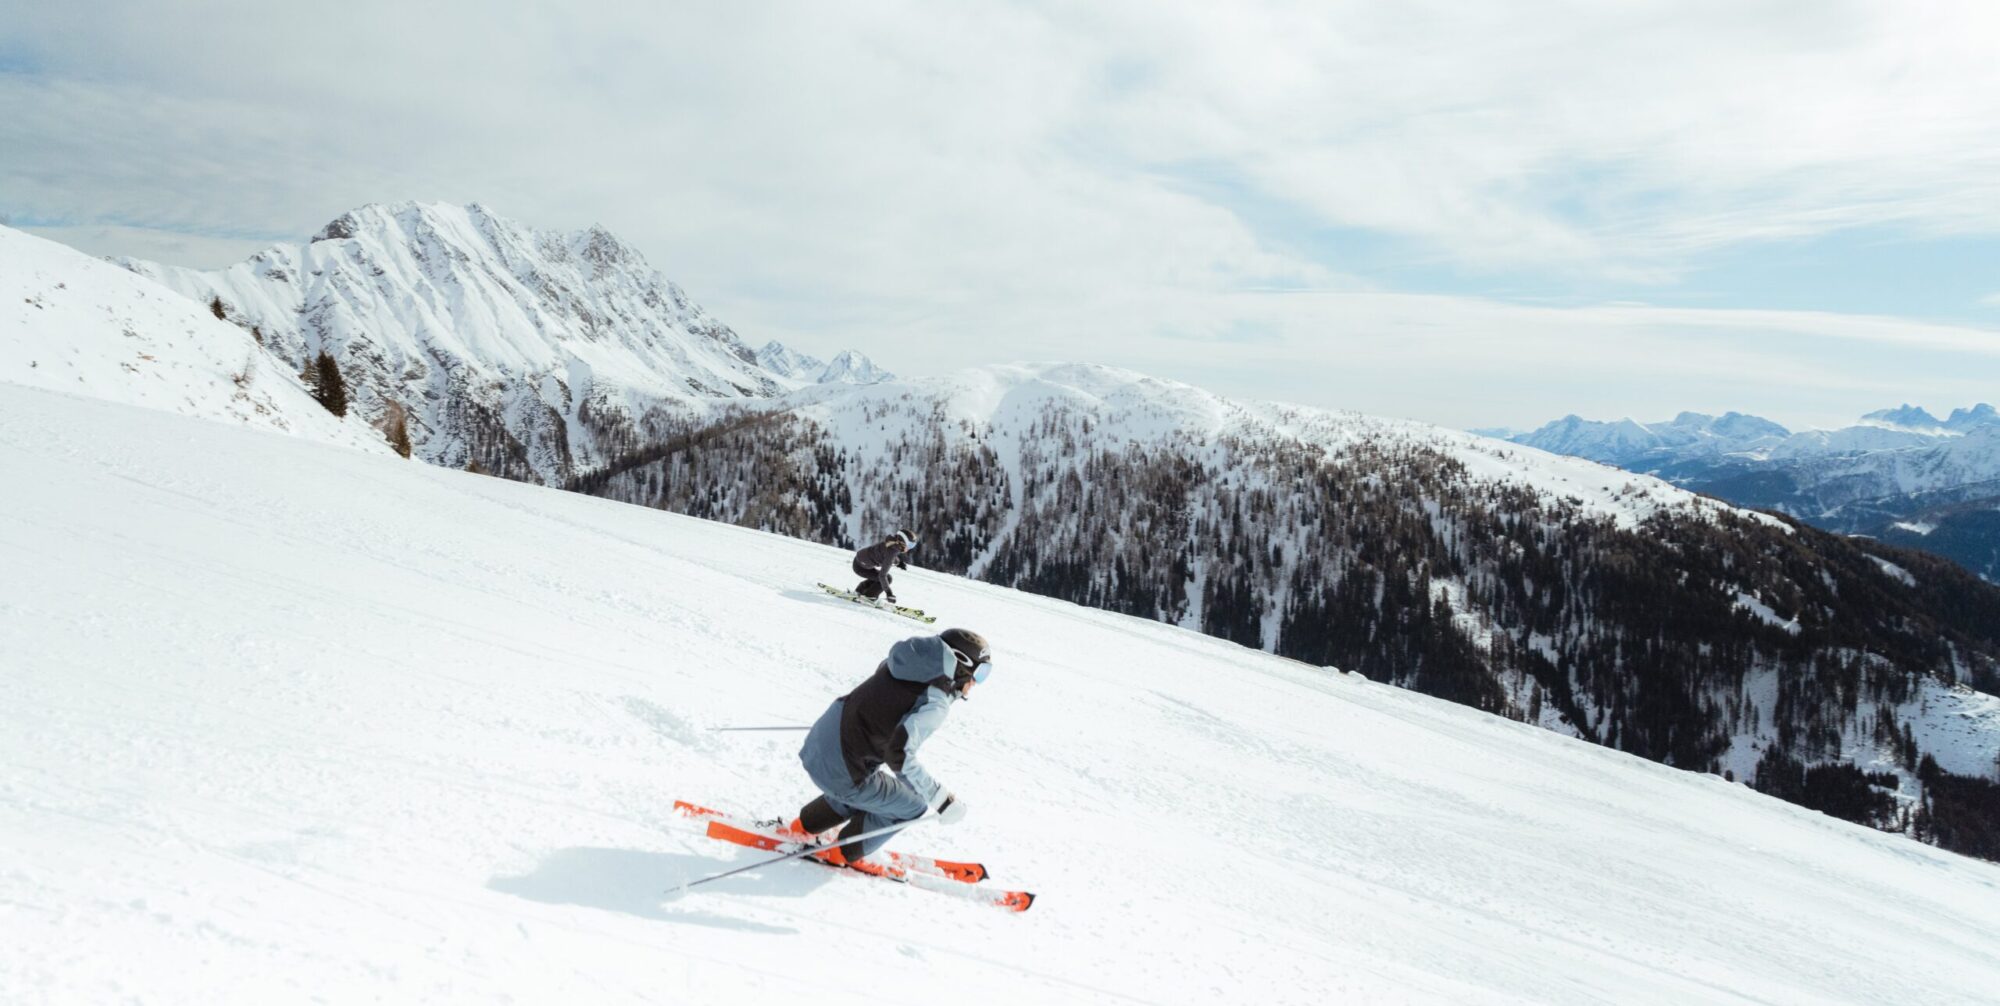 Skifahren in den Alpen bedeutet bei schönstem Panorama und besten Bedingungen aktiv zu sein.